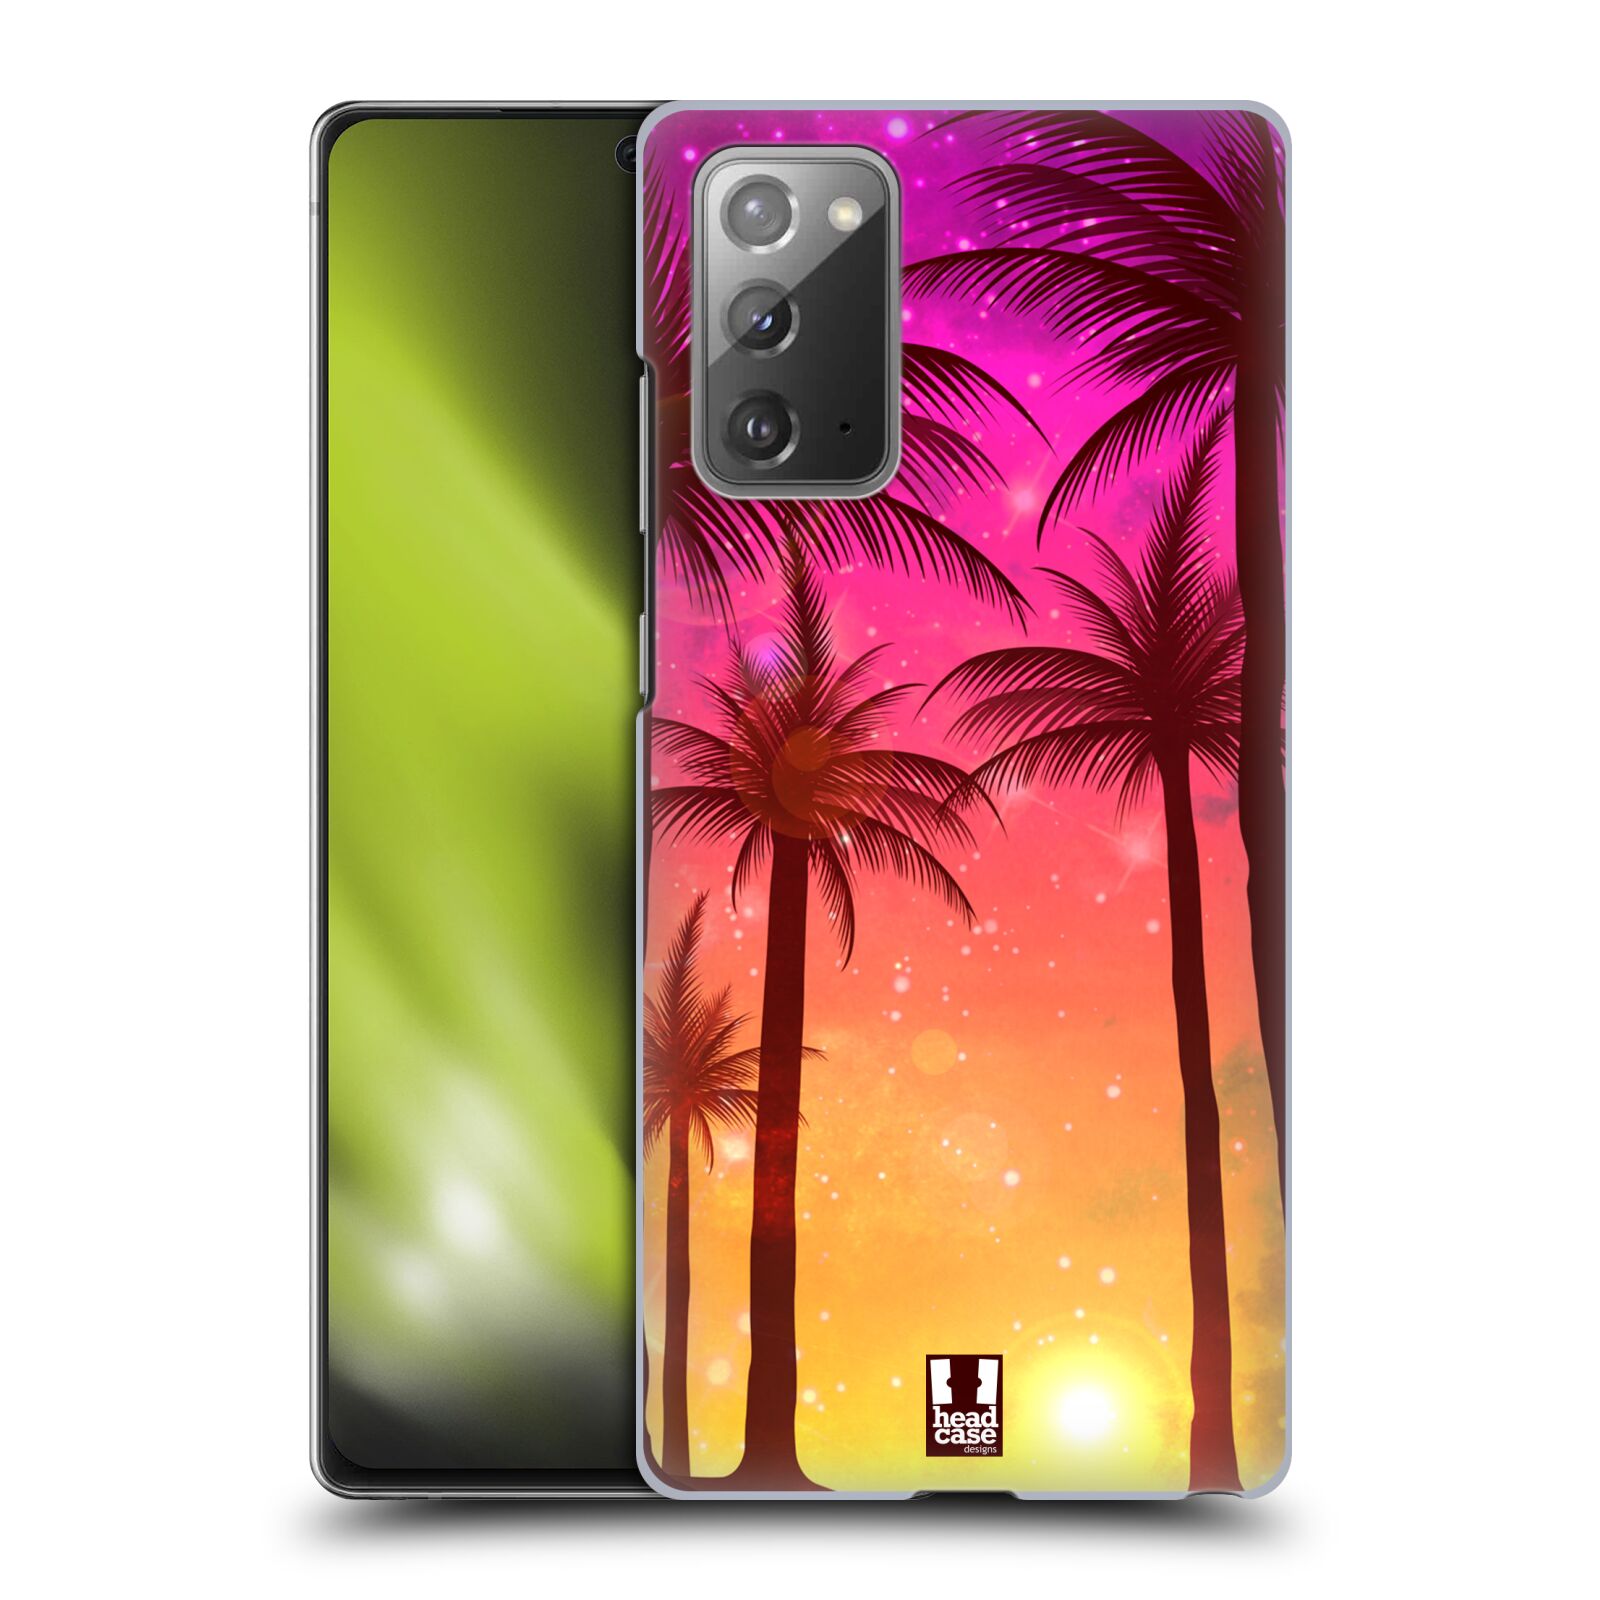 Plastový obal HEAD CASE na mobil Samsung Galaxy Note 20 vzor Kreslený motiv silueta moře a palmy RŮŽOVÁ